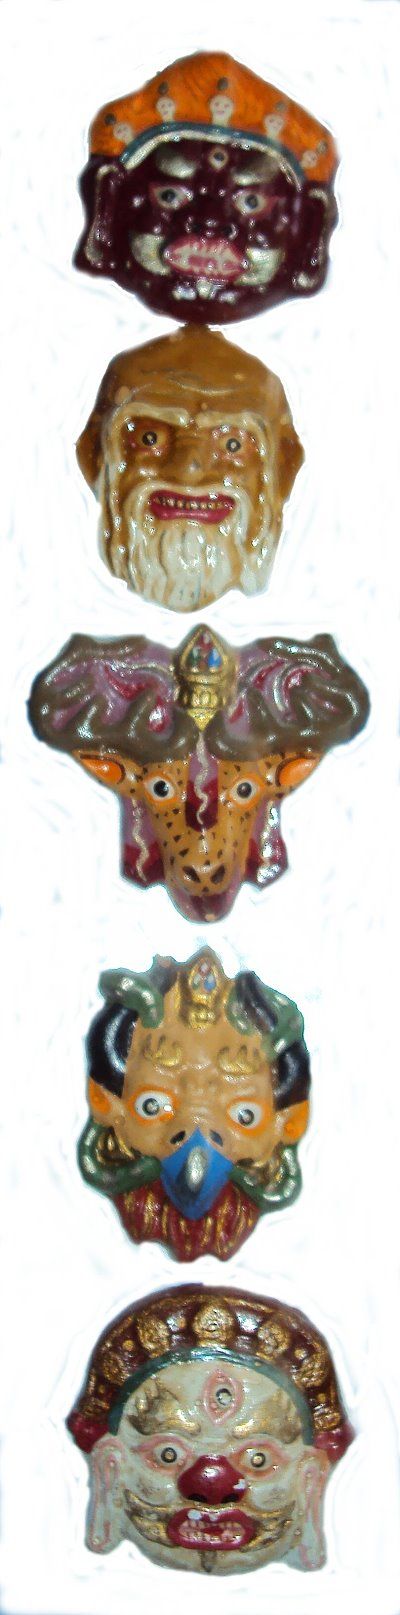 Miniatur-Nachbildungen von Tsam-Tanzmasken